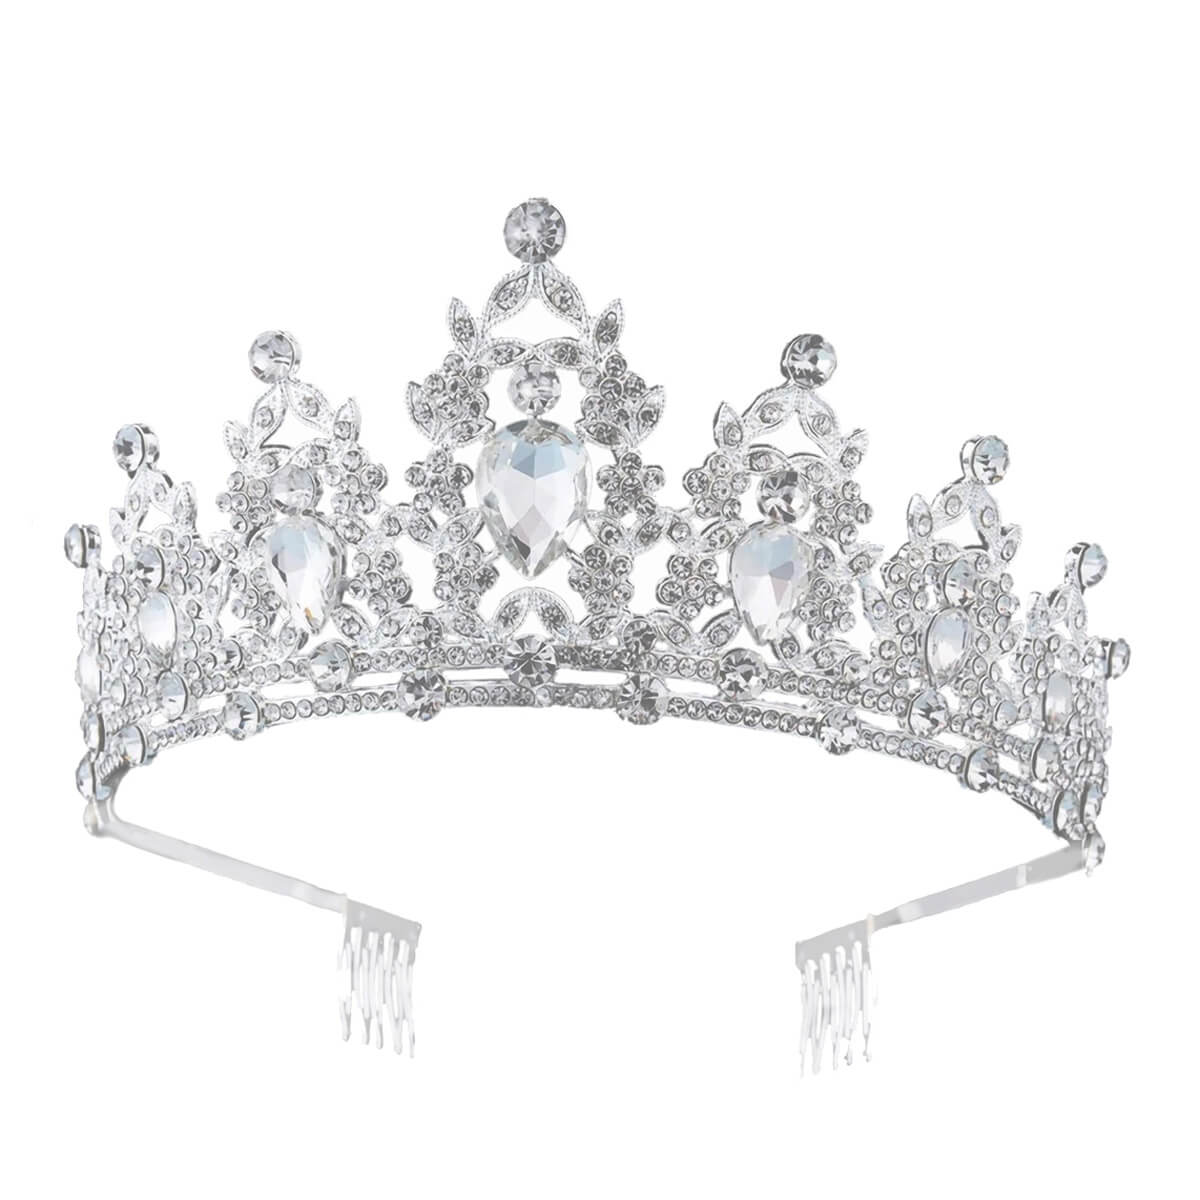 Crown tiara tiara tiara hairband